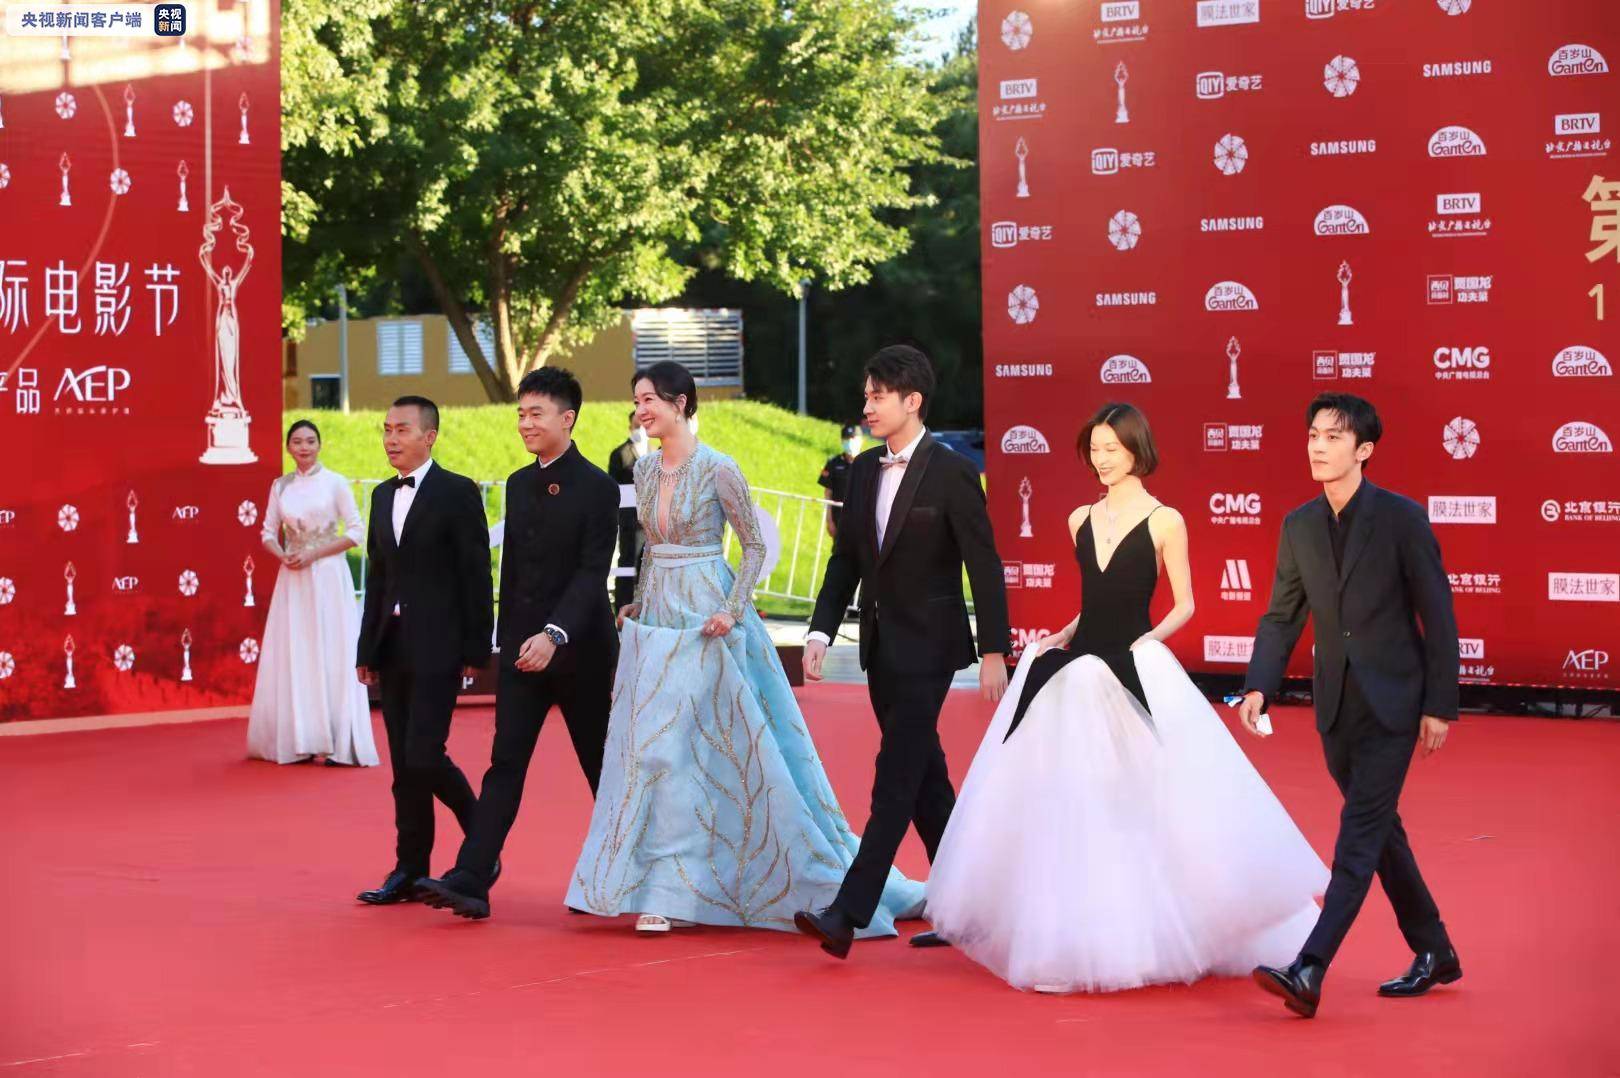 第十一届北京国际电影节红毯仪式举行 多部重量级影片剧组亮相